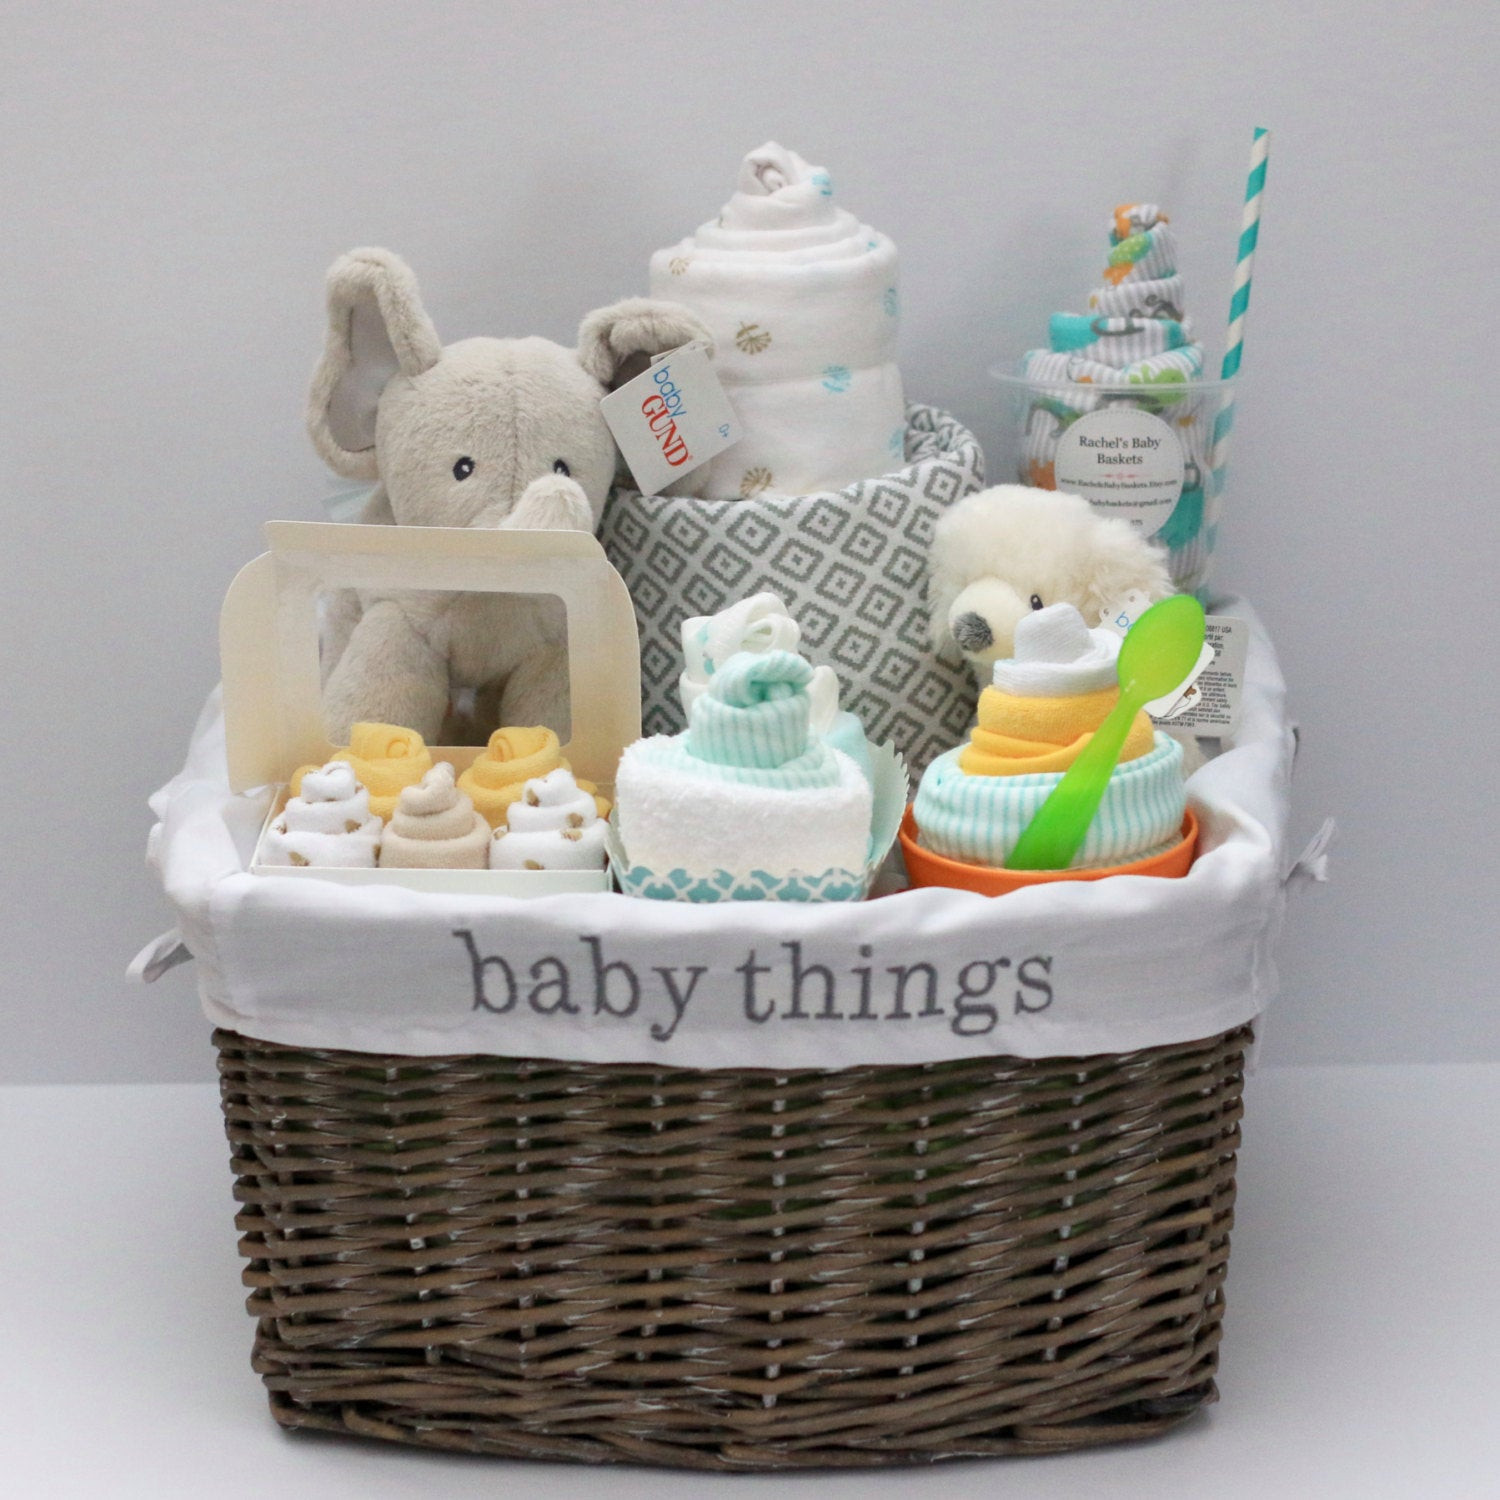 Babyshower Gift Ideas
 Gender Neutral Baby Gift Basket Baby Shower Gift Unique Baby